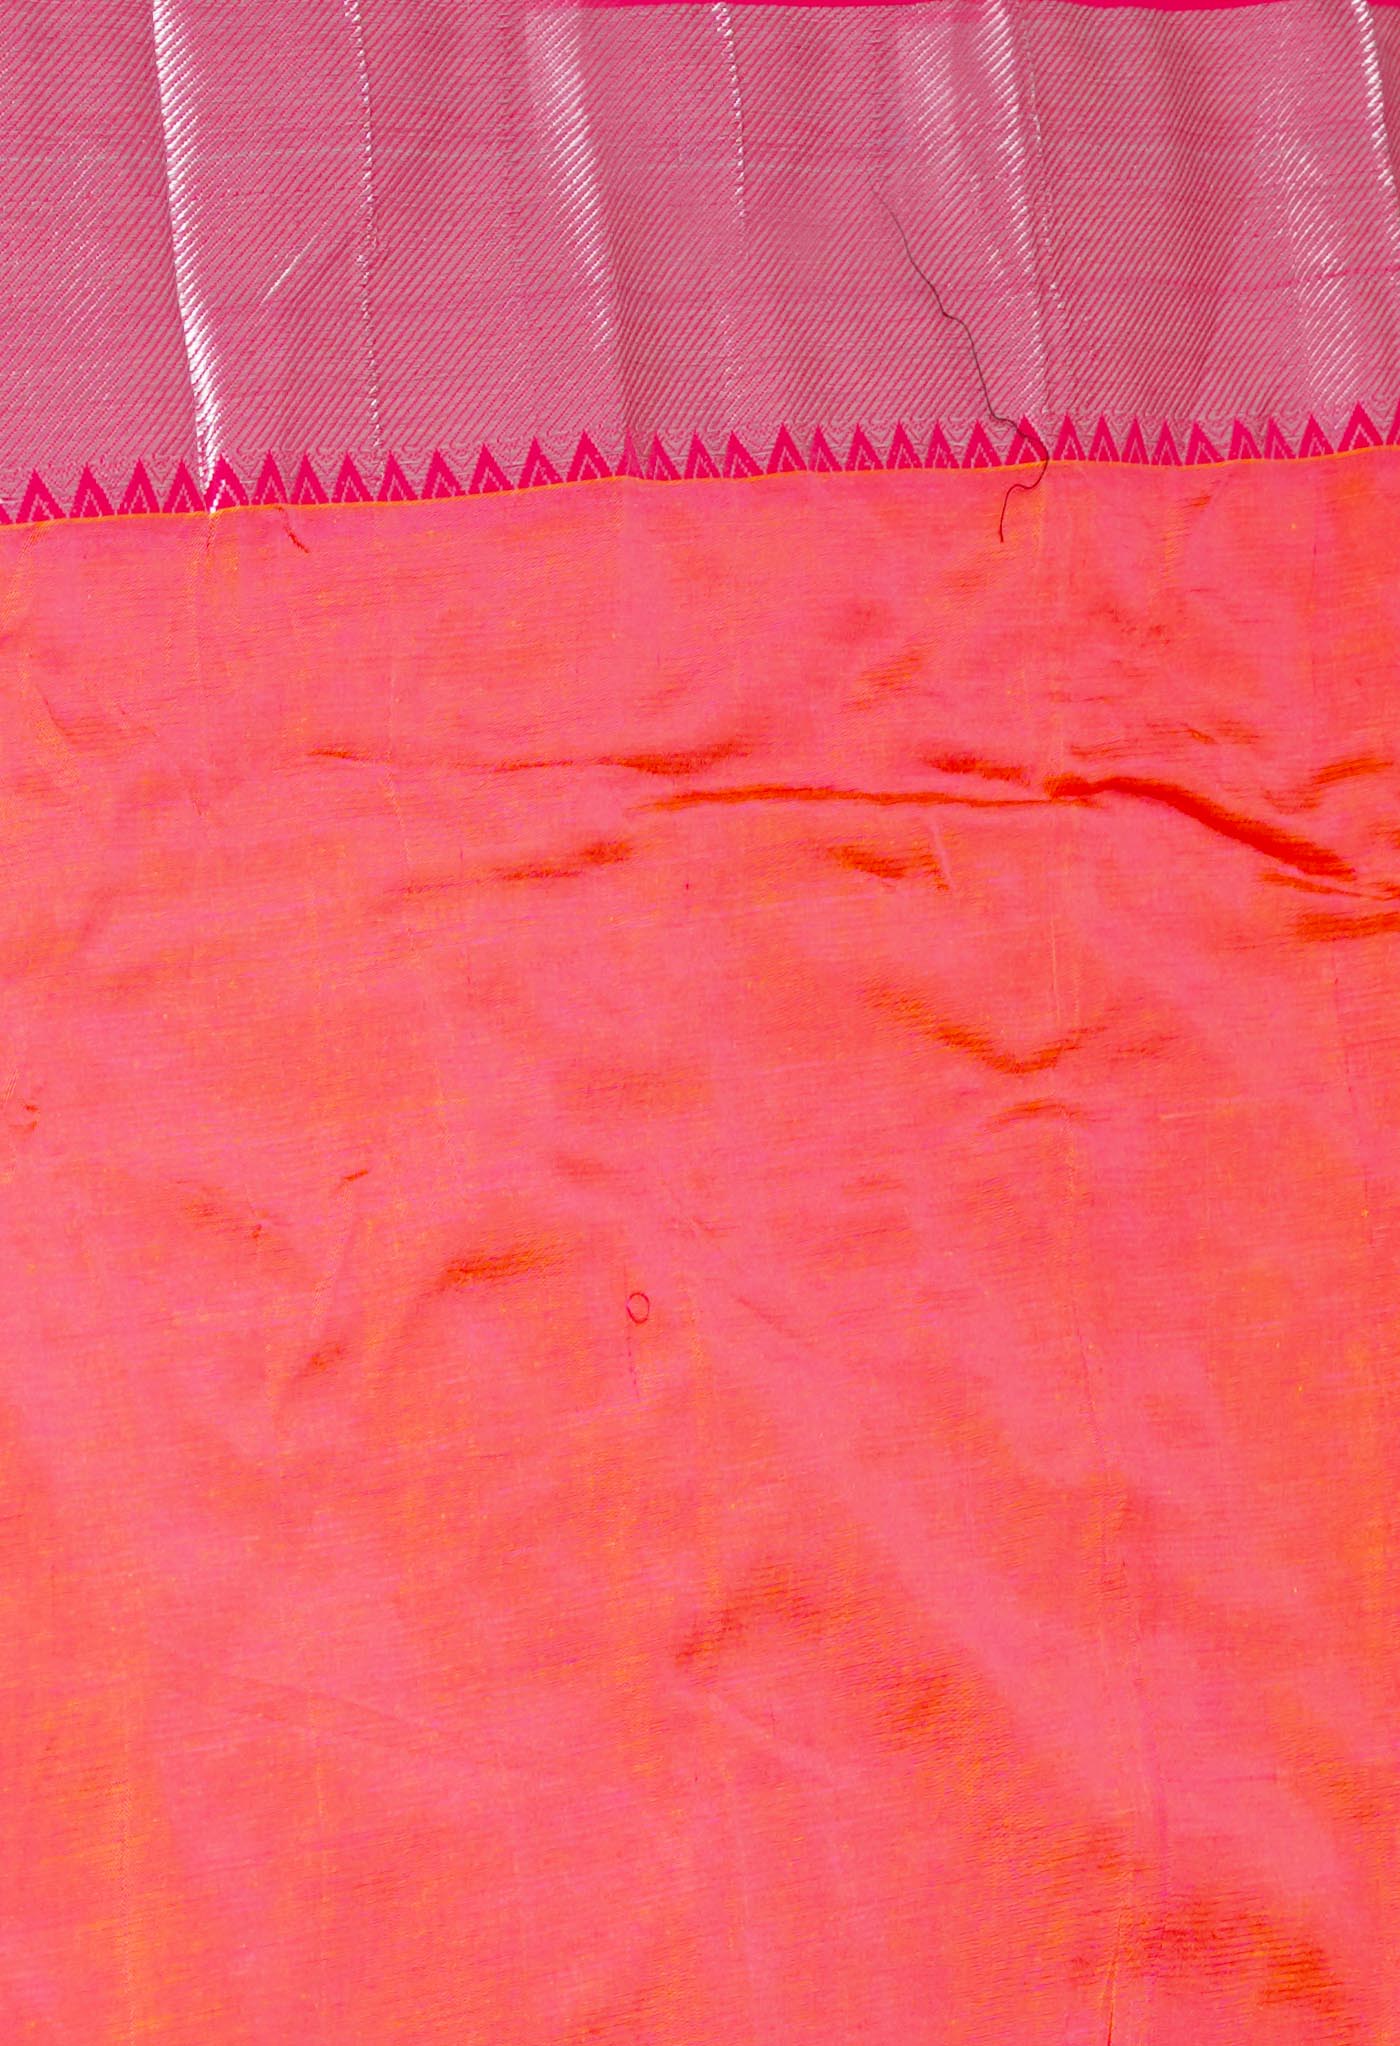 Yellow Pure Handloom Mangalgiri Pattu Silk Saree-UNM63697